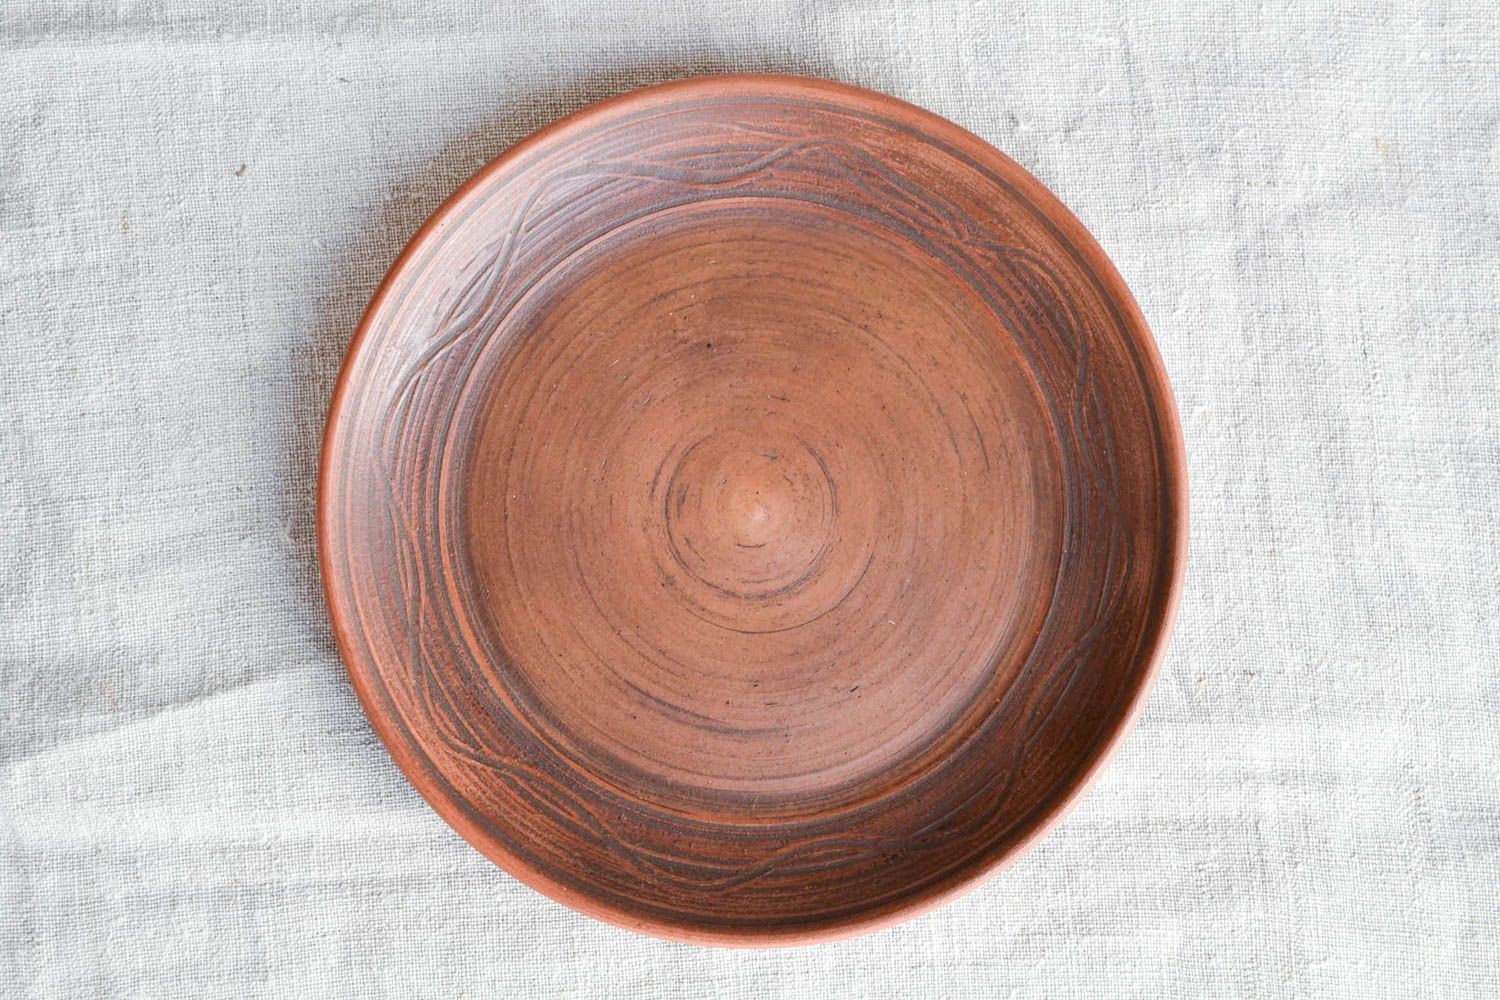 Handmade Keramik Teller Haus Dekor Design Teller Tisch Dekor klein flach schön foto 3